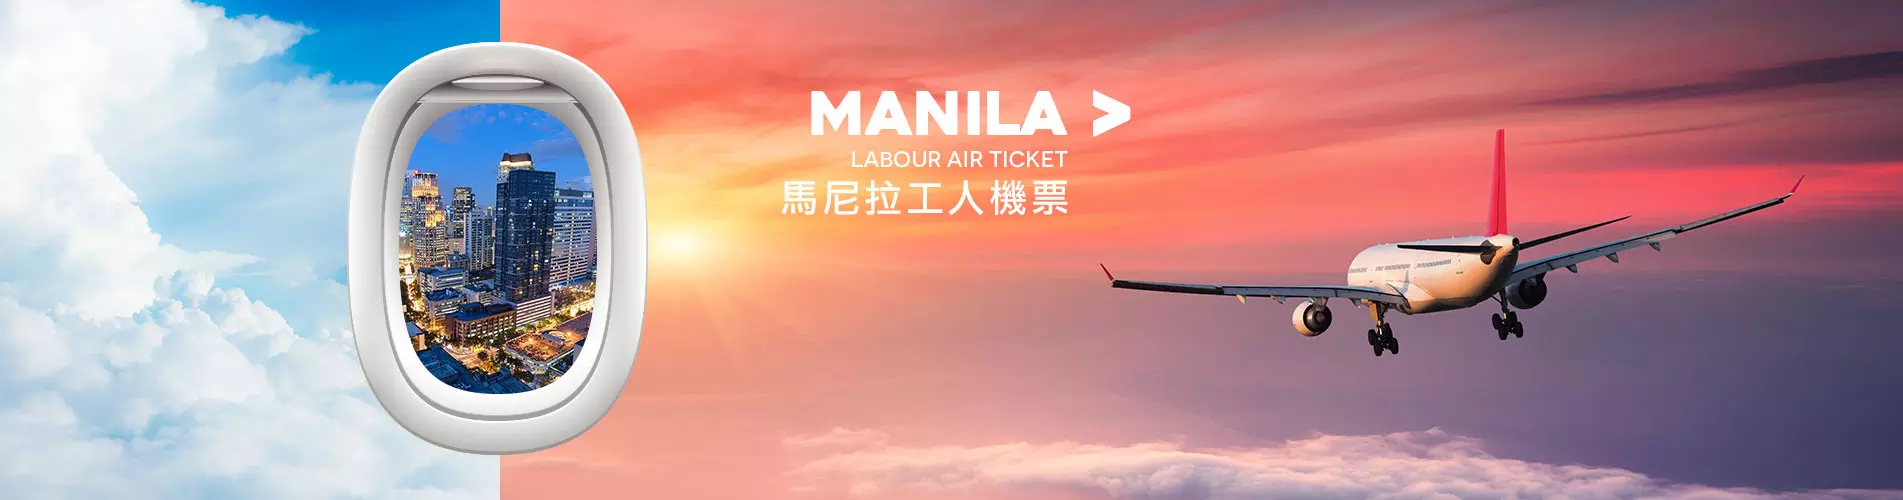 馬尼拉工人機票 Manila Labour Air Ticket